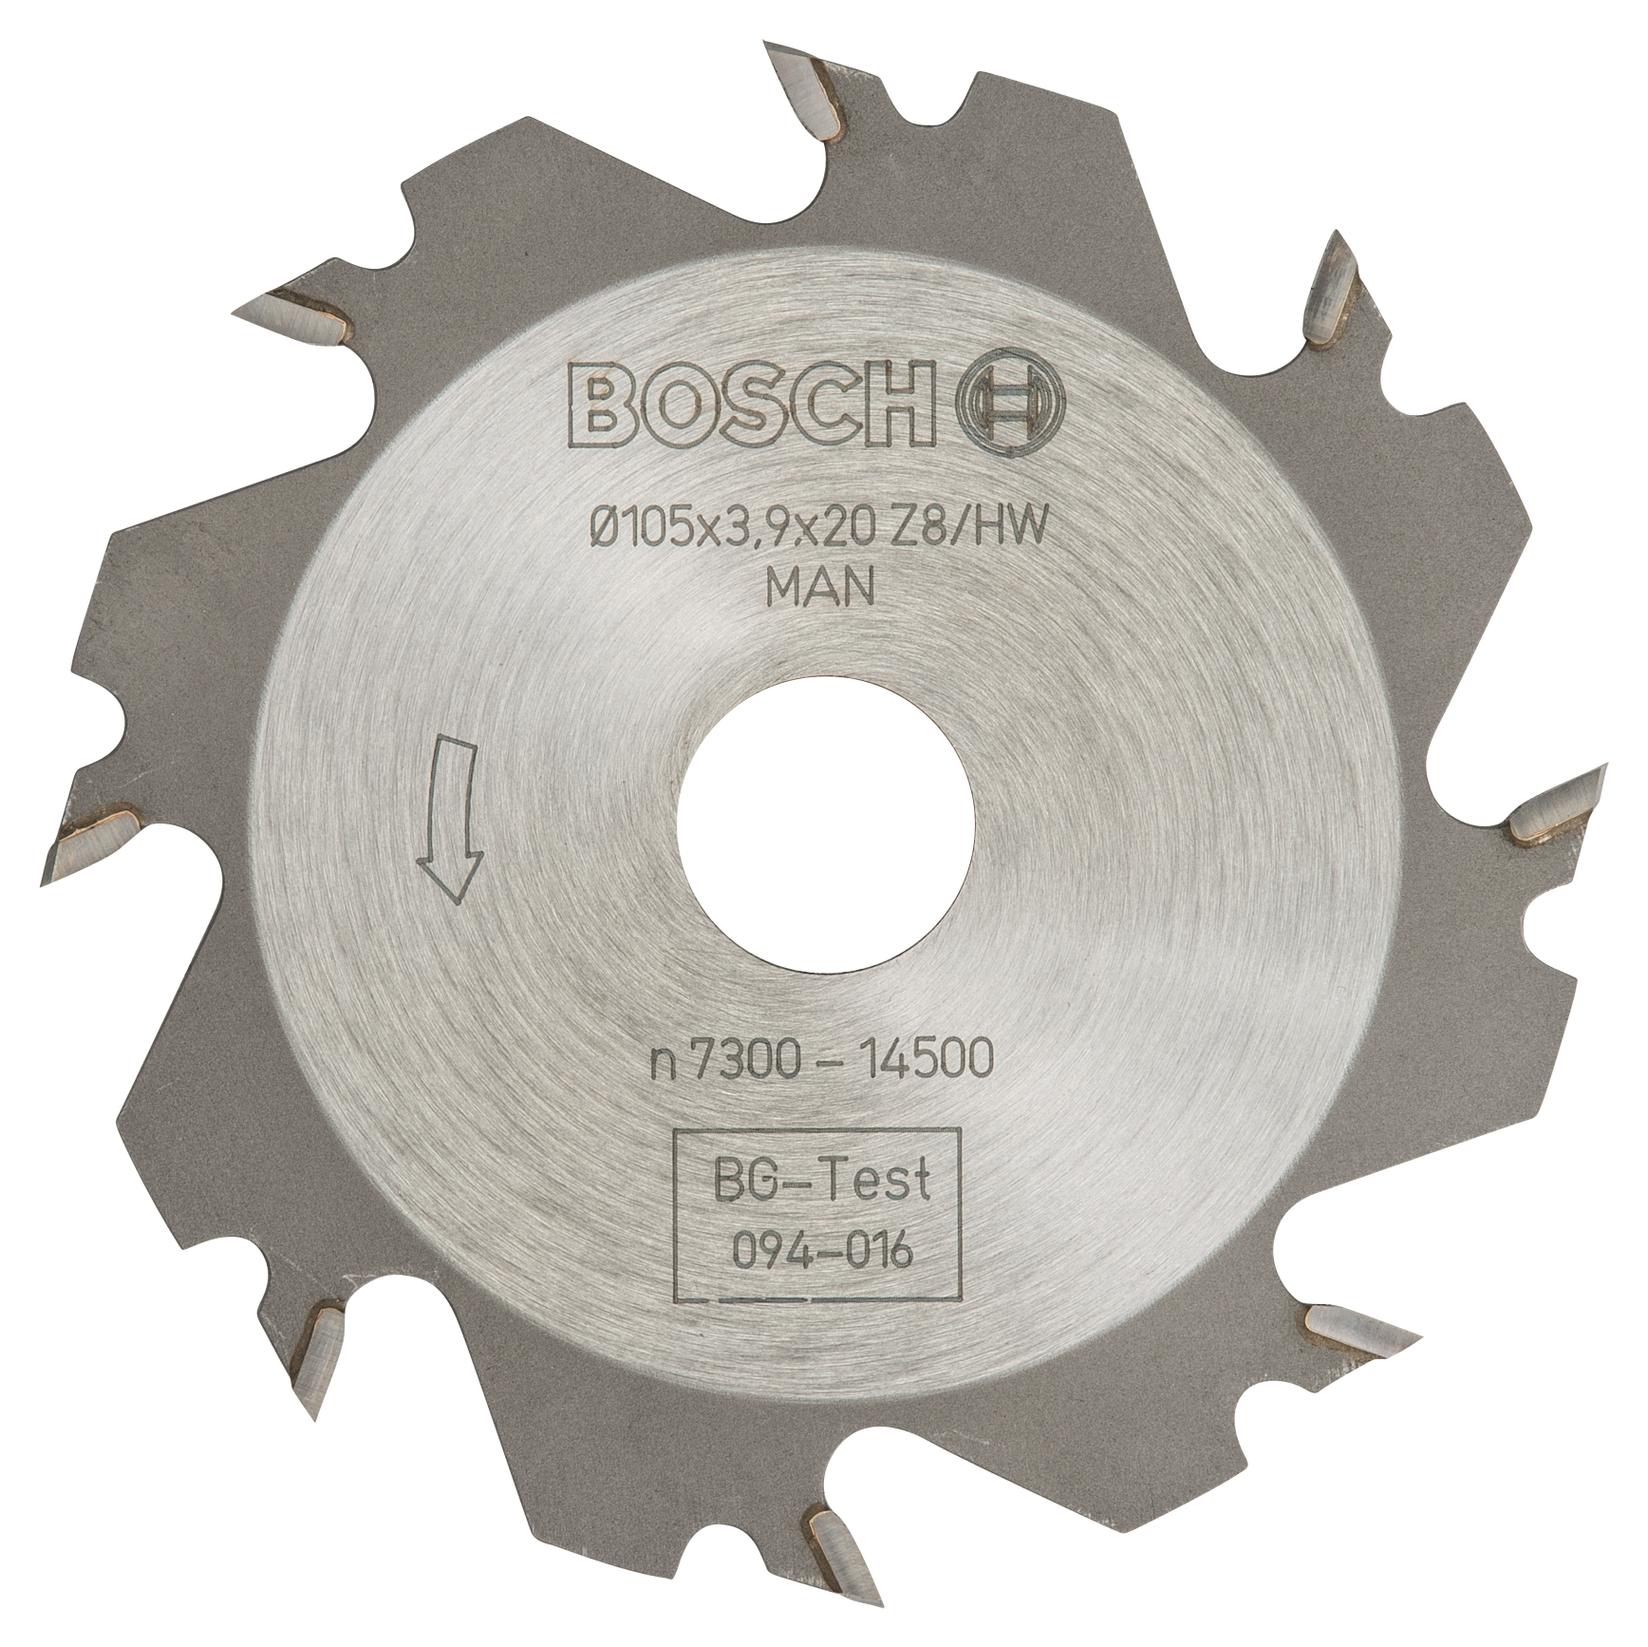 Selected image for Bosch Pločasto glodalo 3608641008, 8, 20 mm, 4 mm